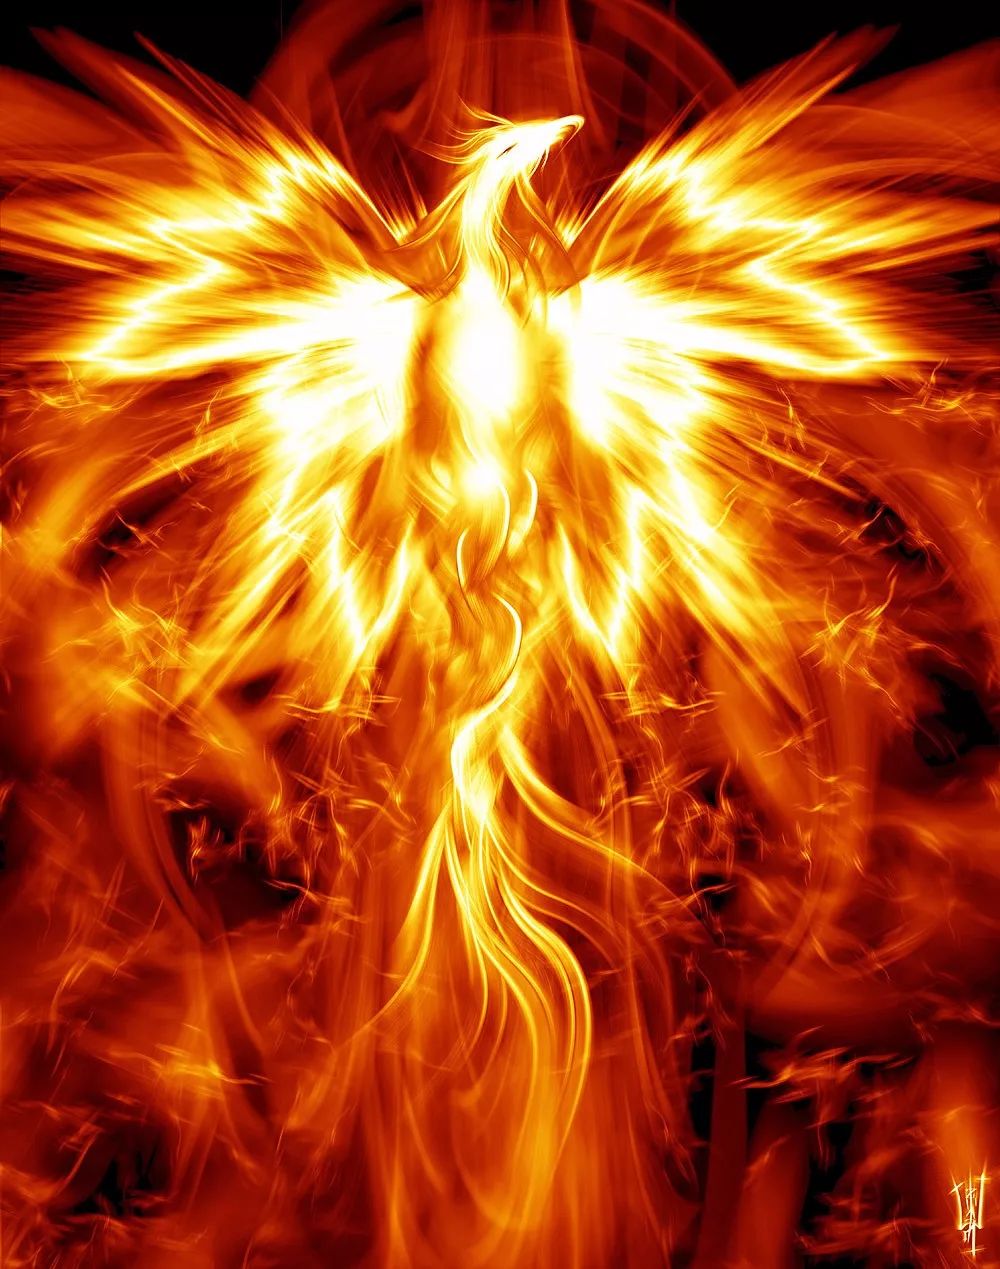 凤凰在历经烈火的洗礼后焕发新生,它体现出一种不屈不挠的奋斗精神